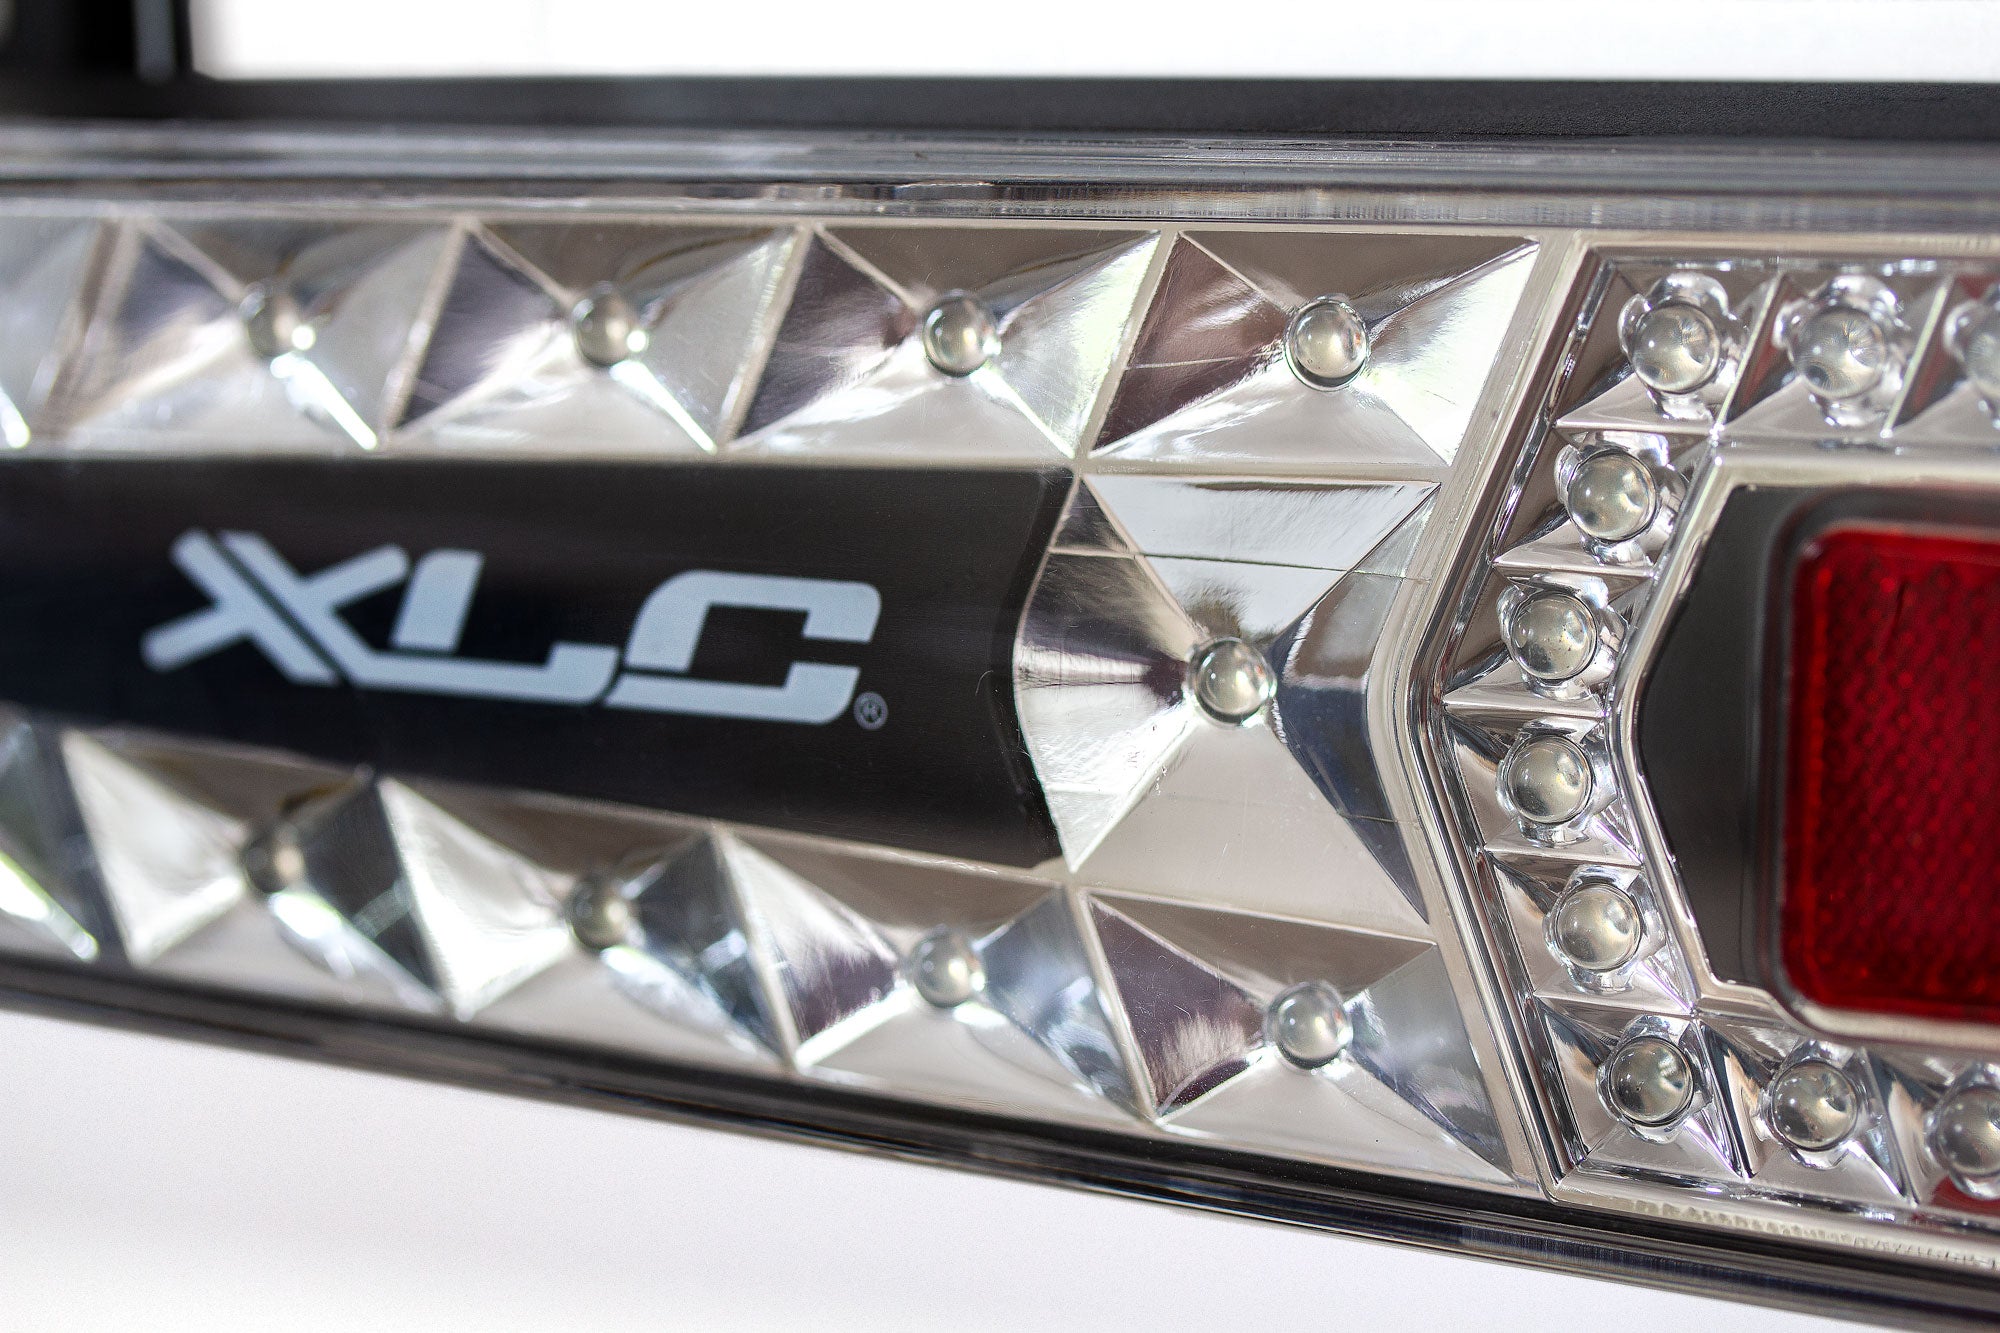 XLC Azura LED Fietsendrager voor 2 fietsen